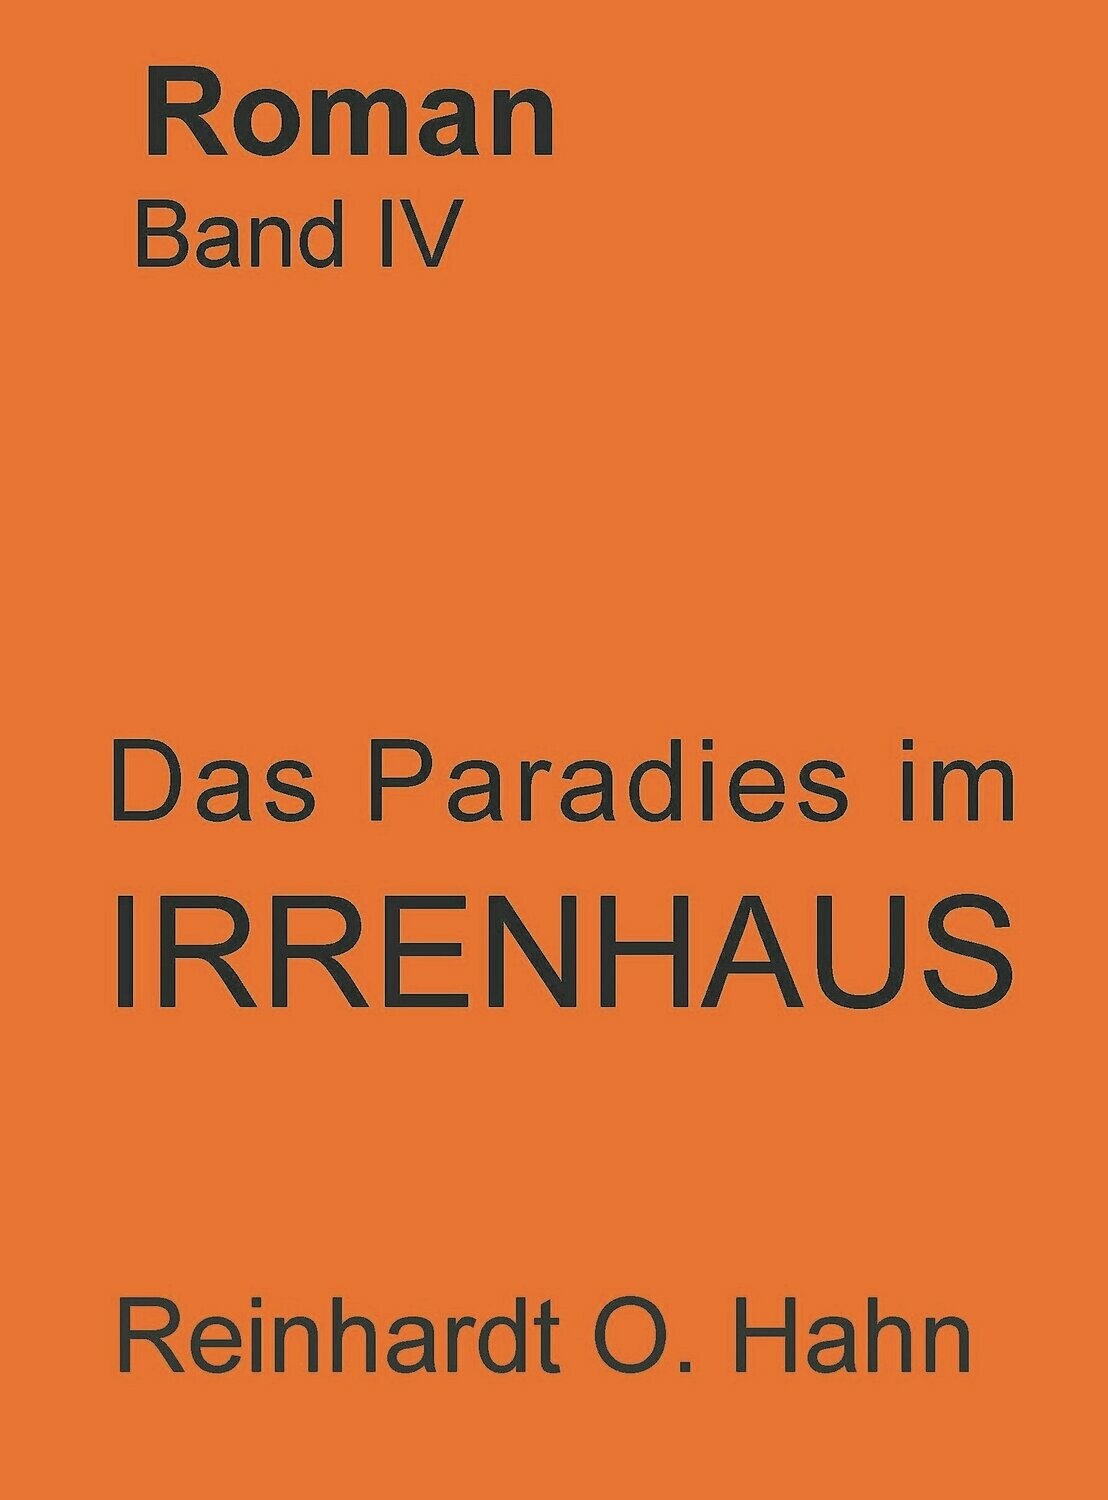 Reinhardt O. Hahn
Das Paradies im Irrenhaus
ISBN 978-3-946169-25-3